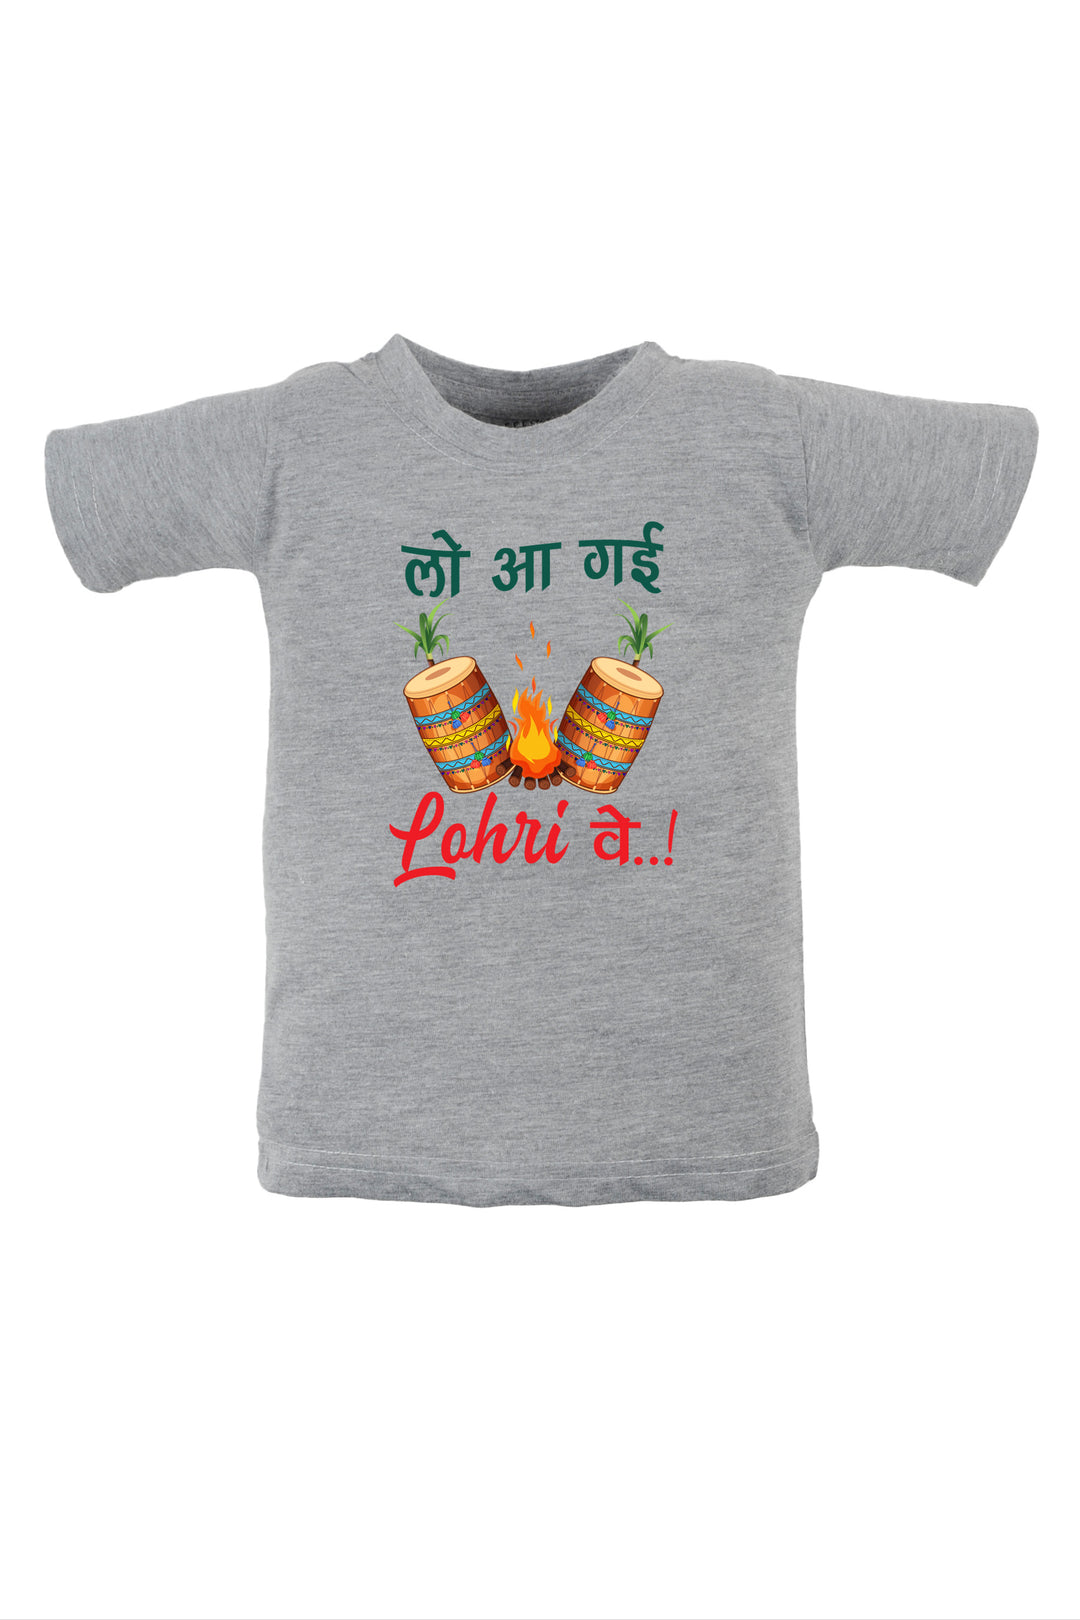 Lo Aa Gahi Lohri Ve (Hindi) Kids T Shirt